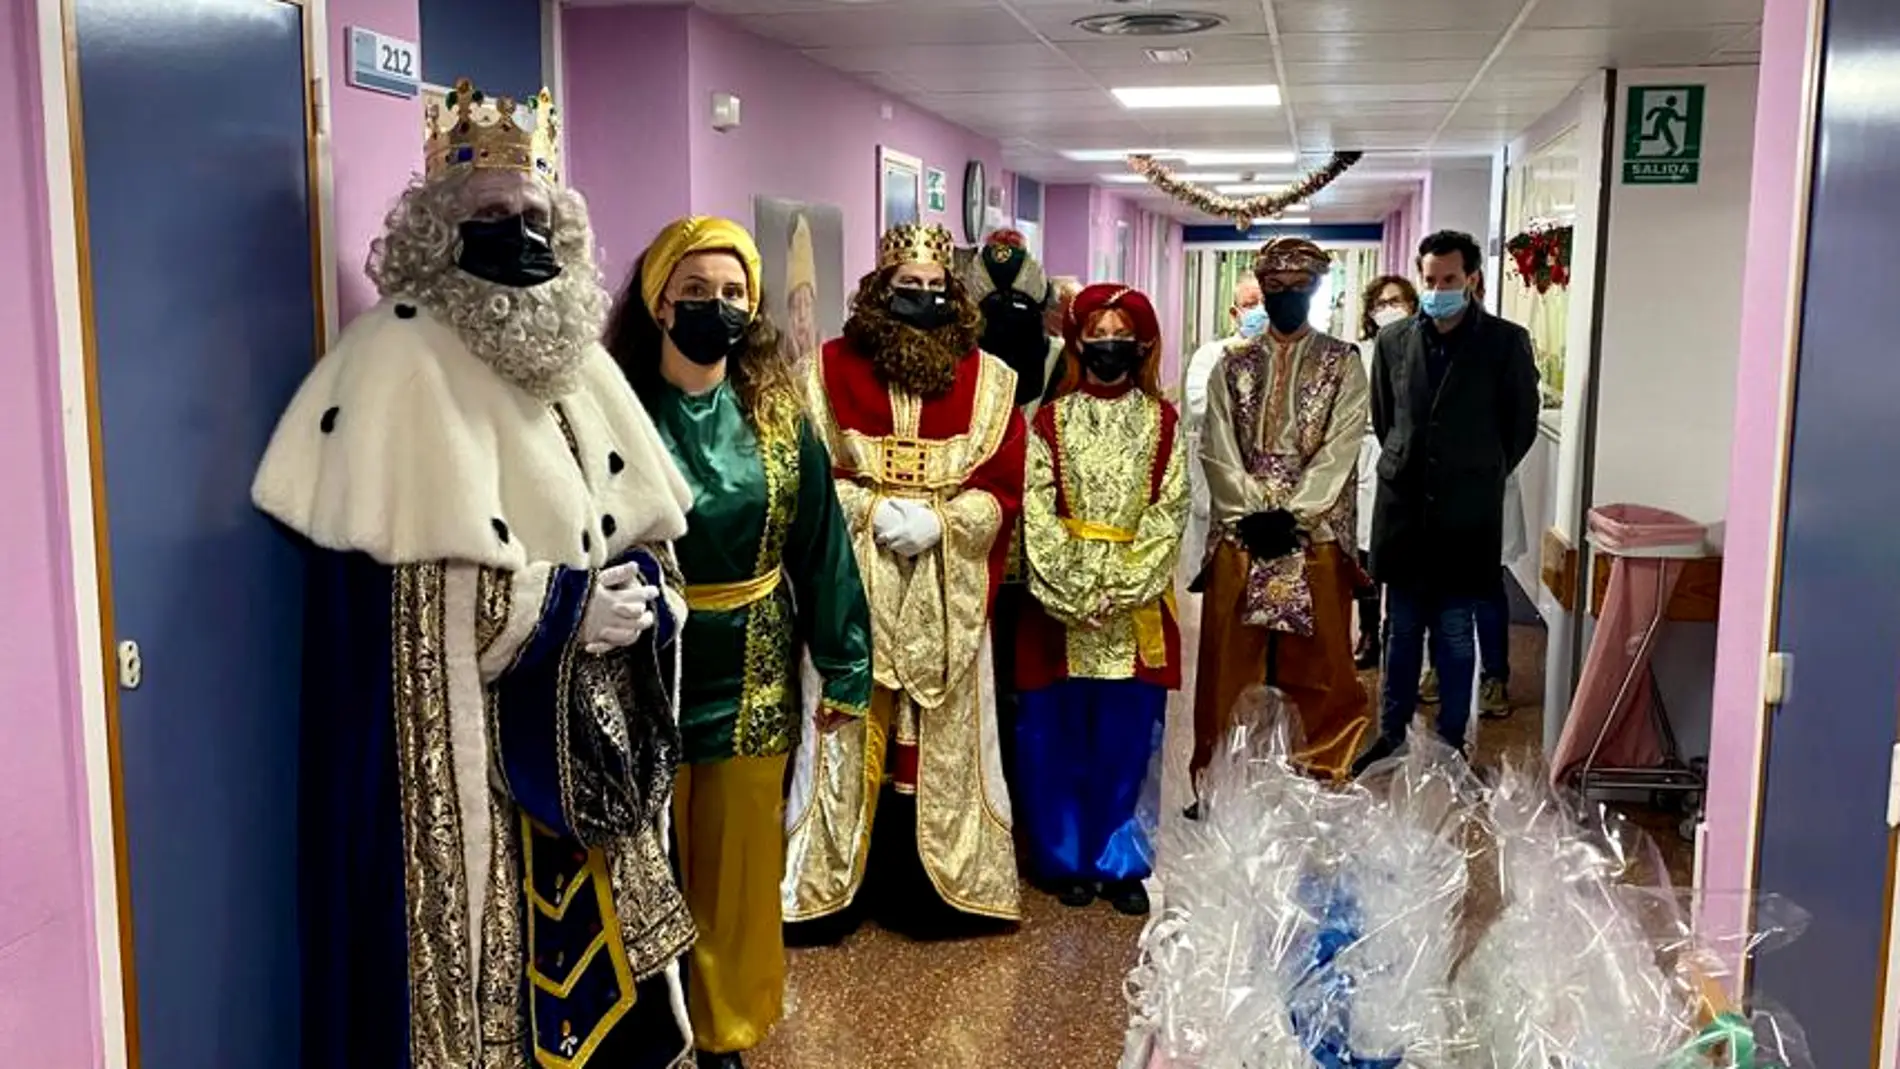 Los Reyes Magos visitan el Hospital Vega Baja para recoger sus deseos y entregarles regalos 